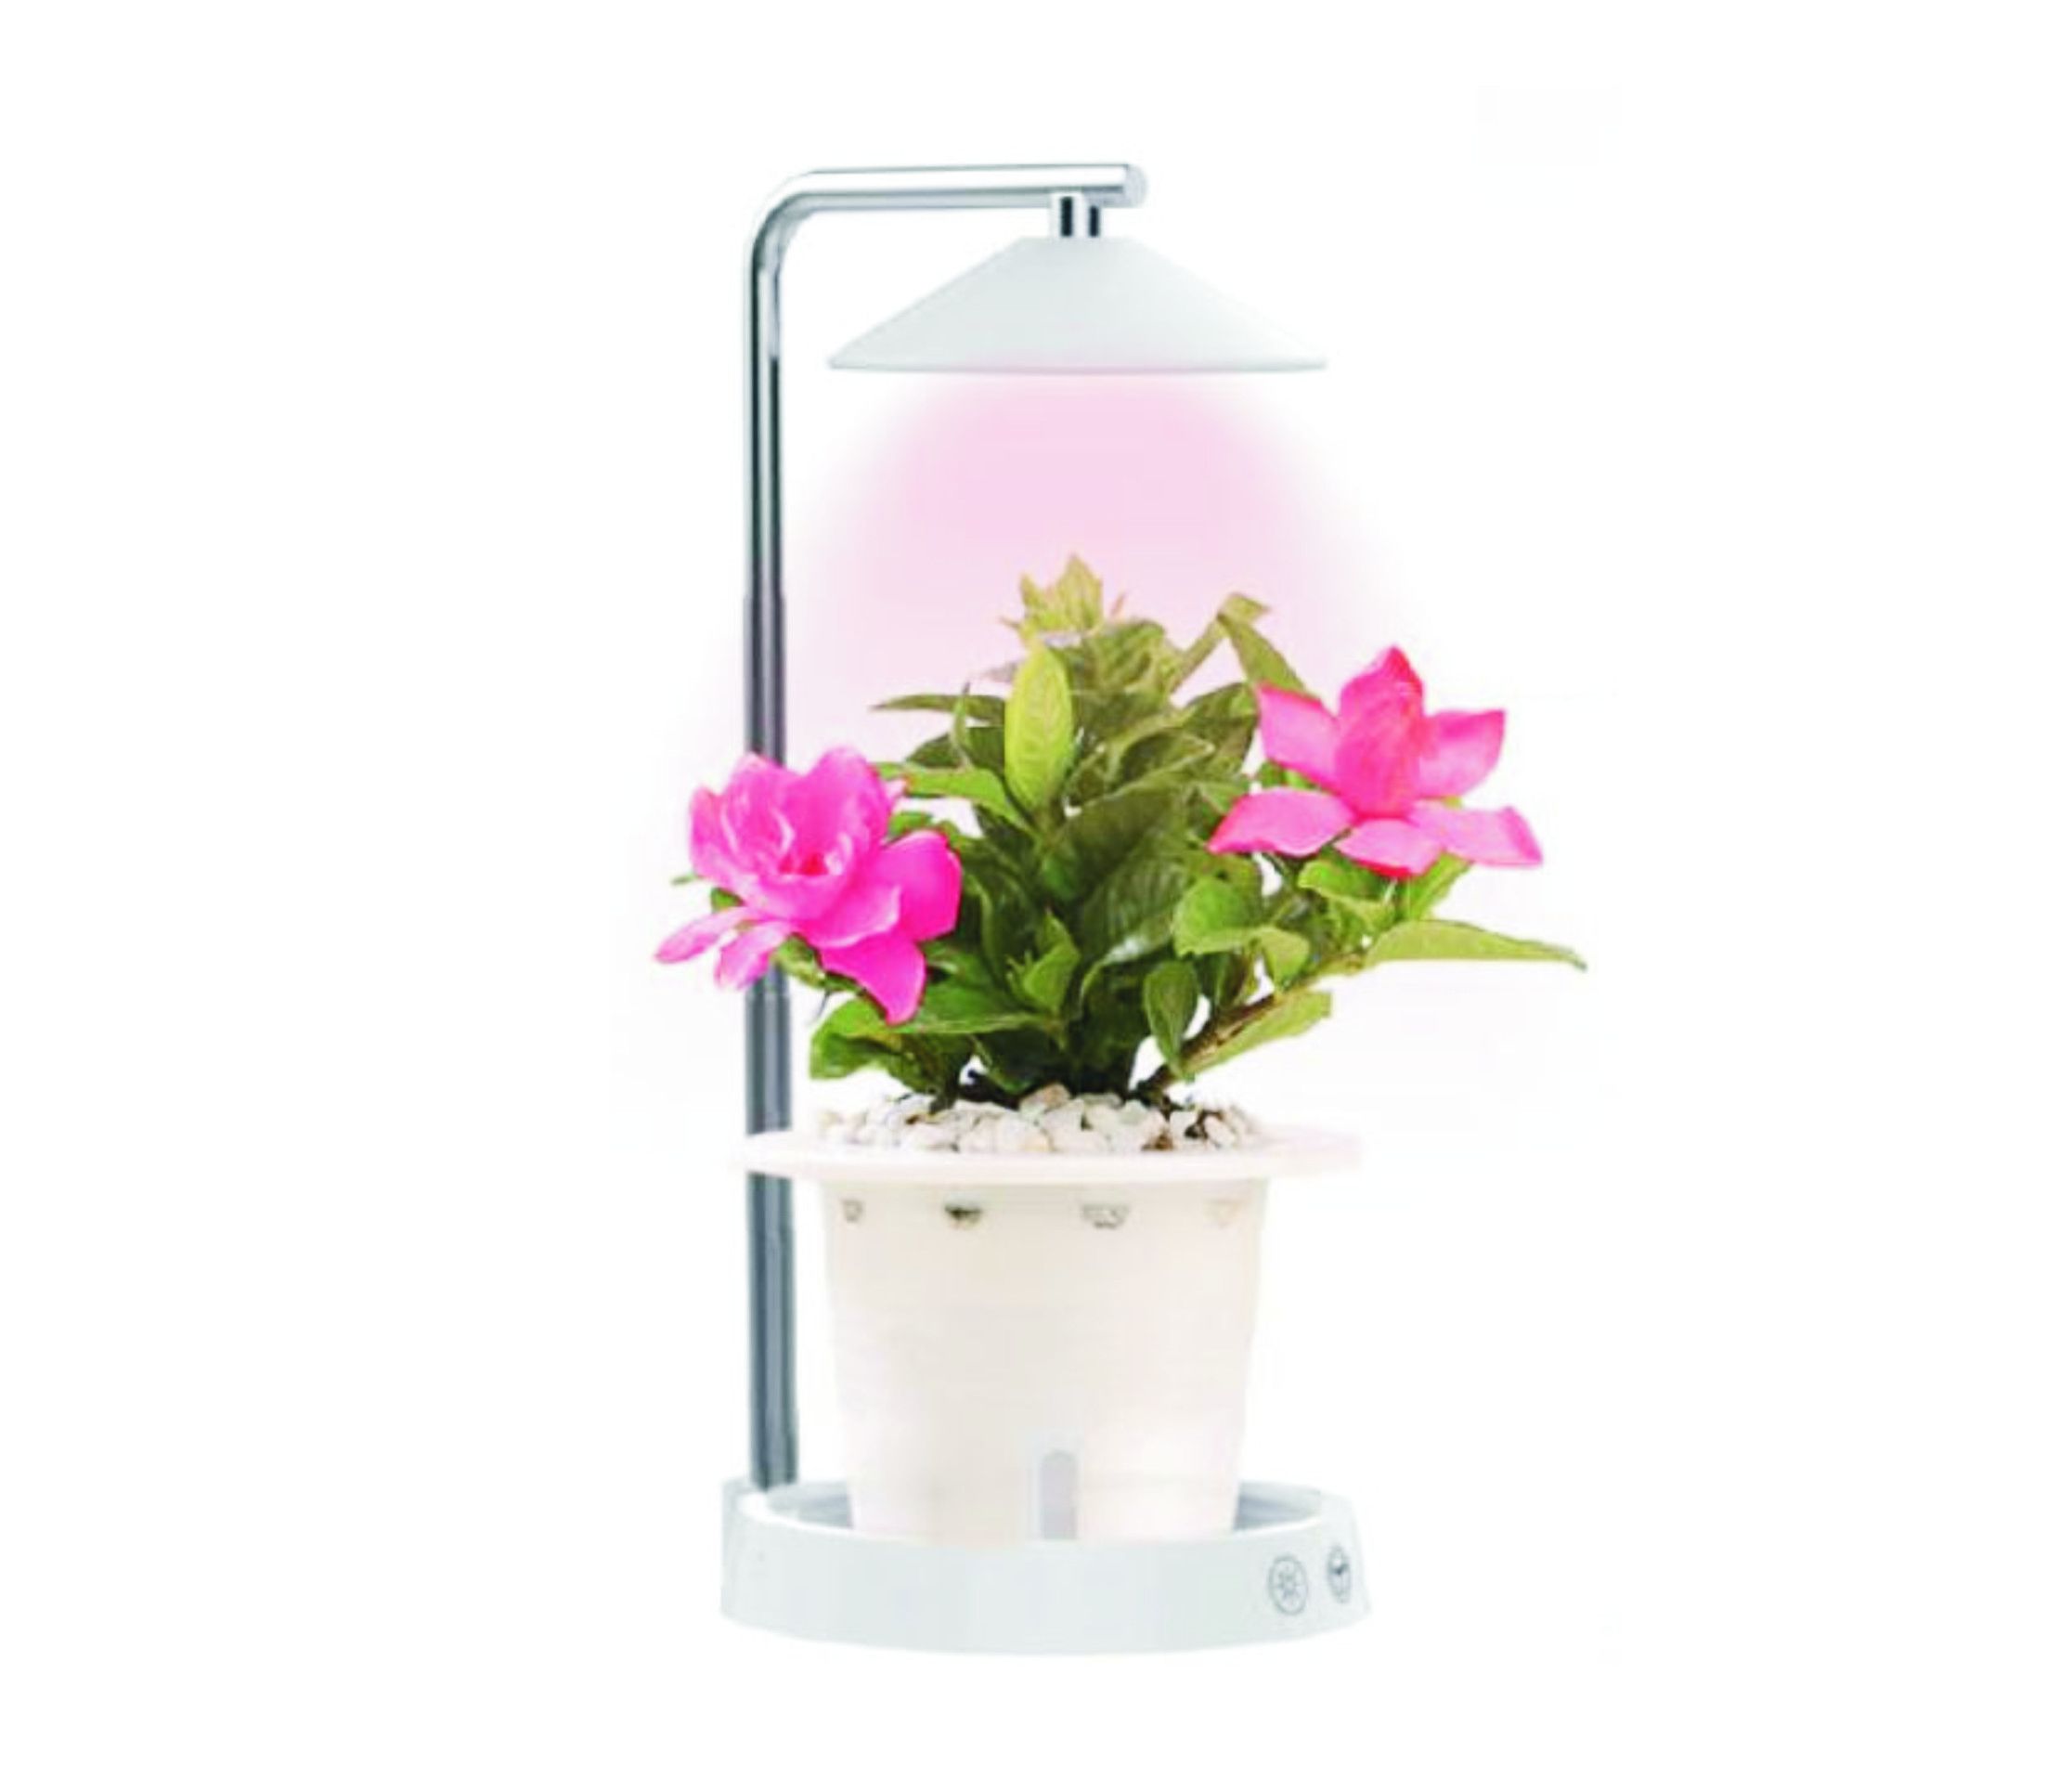 Регулируемая на 360 ° светодиодная лампа 2-в-1 и лампа для выращивания растений (Alfa) - ПНЛЕД-142. Светодиодный светильник для выращивания растений - Alfa